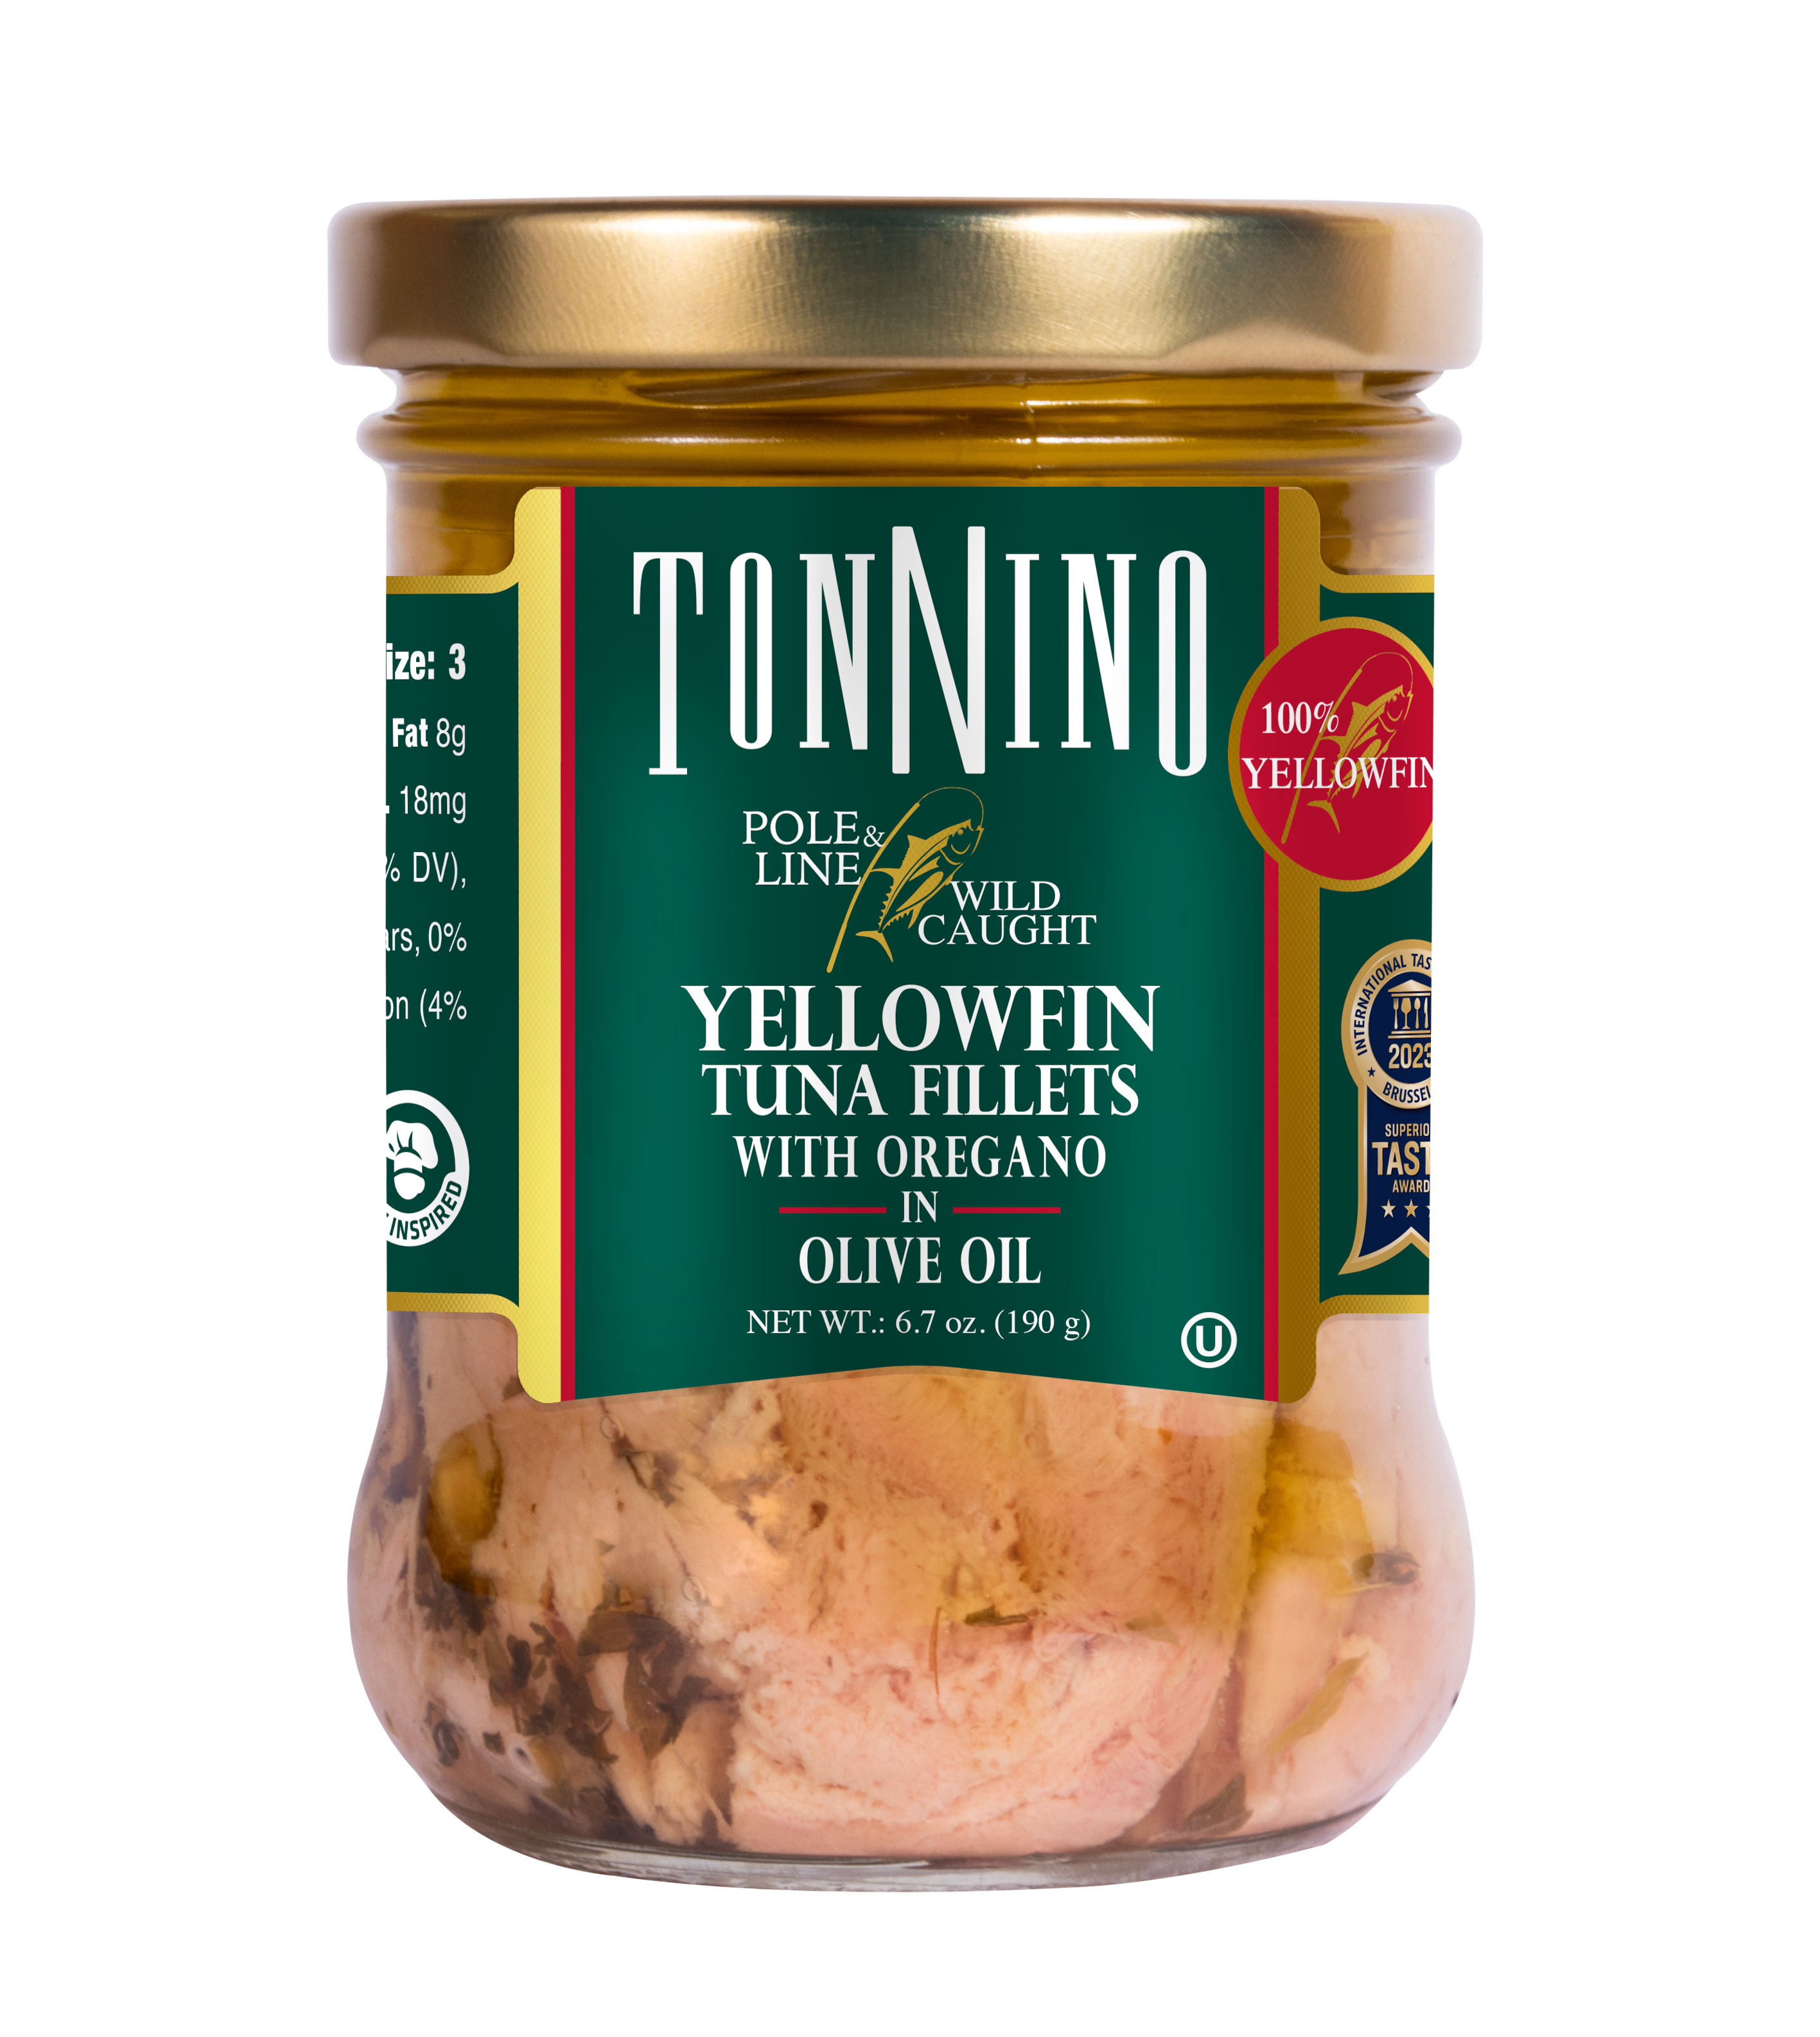 Tonnino Pole & Line - Yellowfin Tuna Fillets with Oregano in Olive Oil 6.7 oz